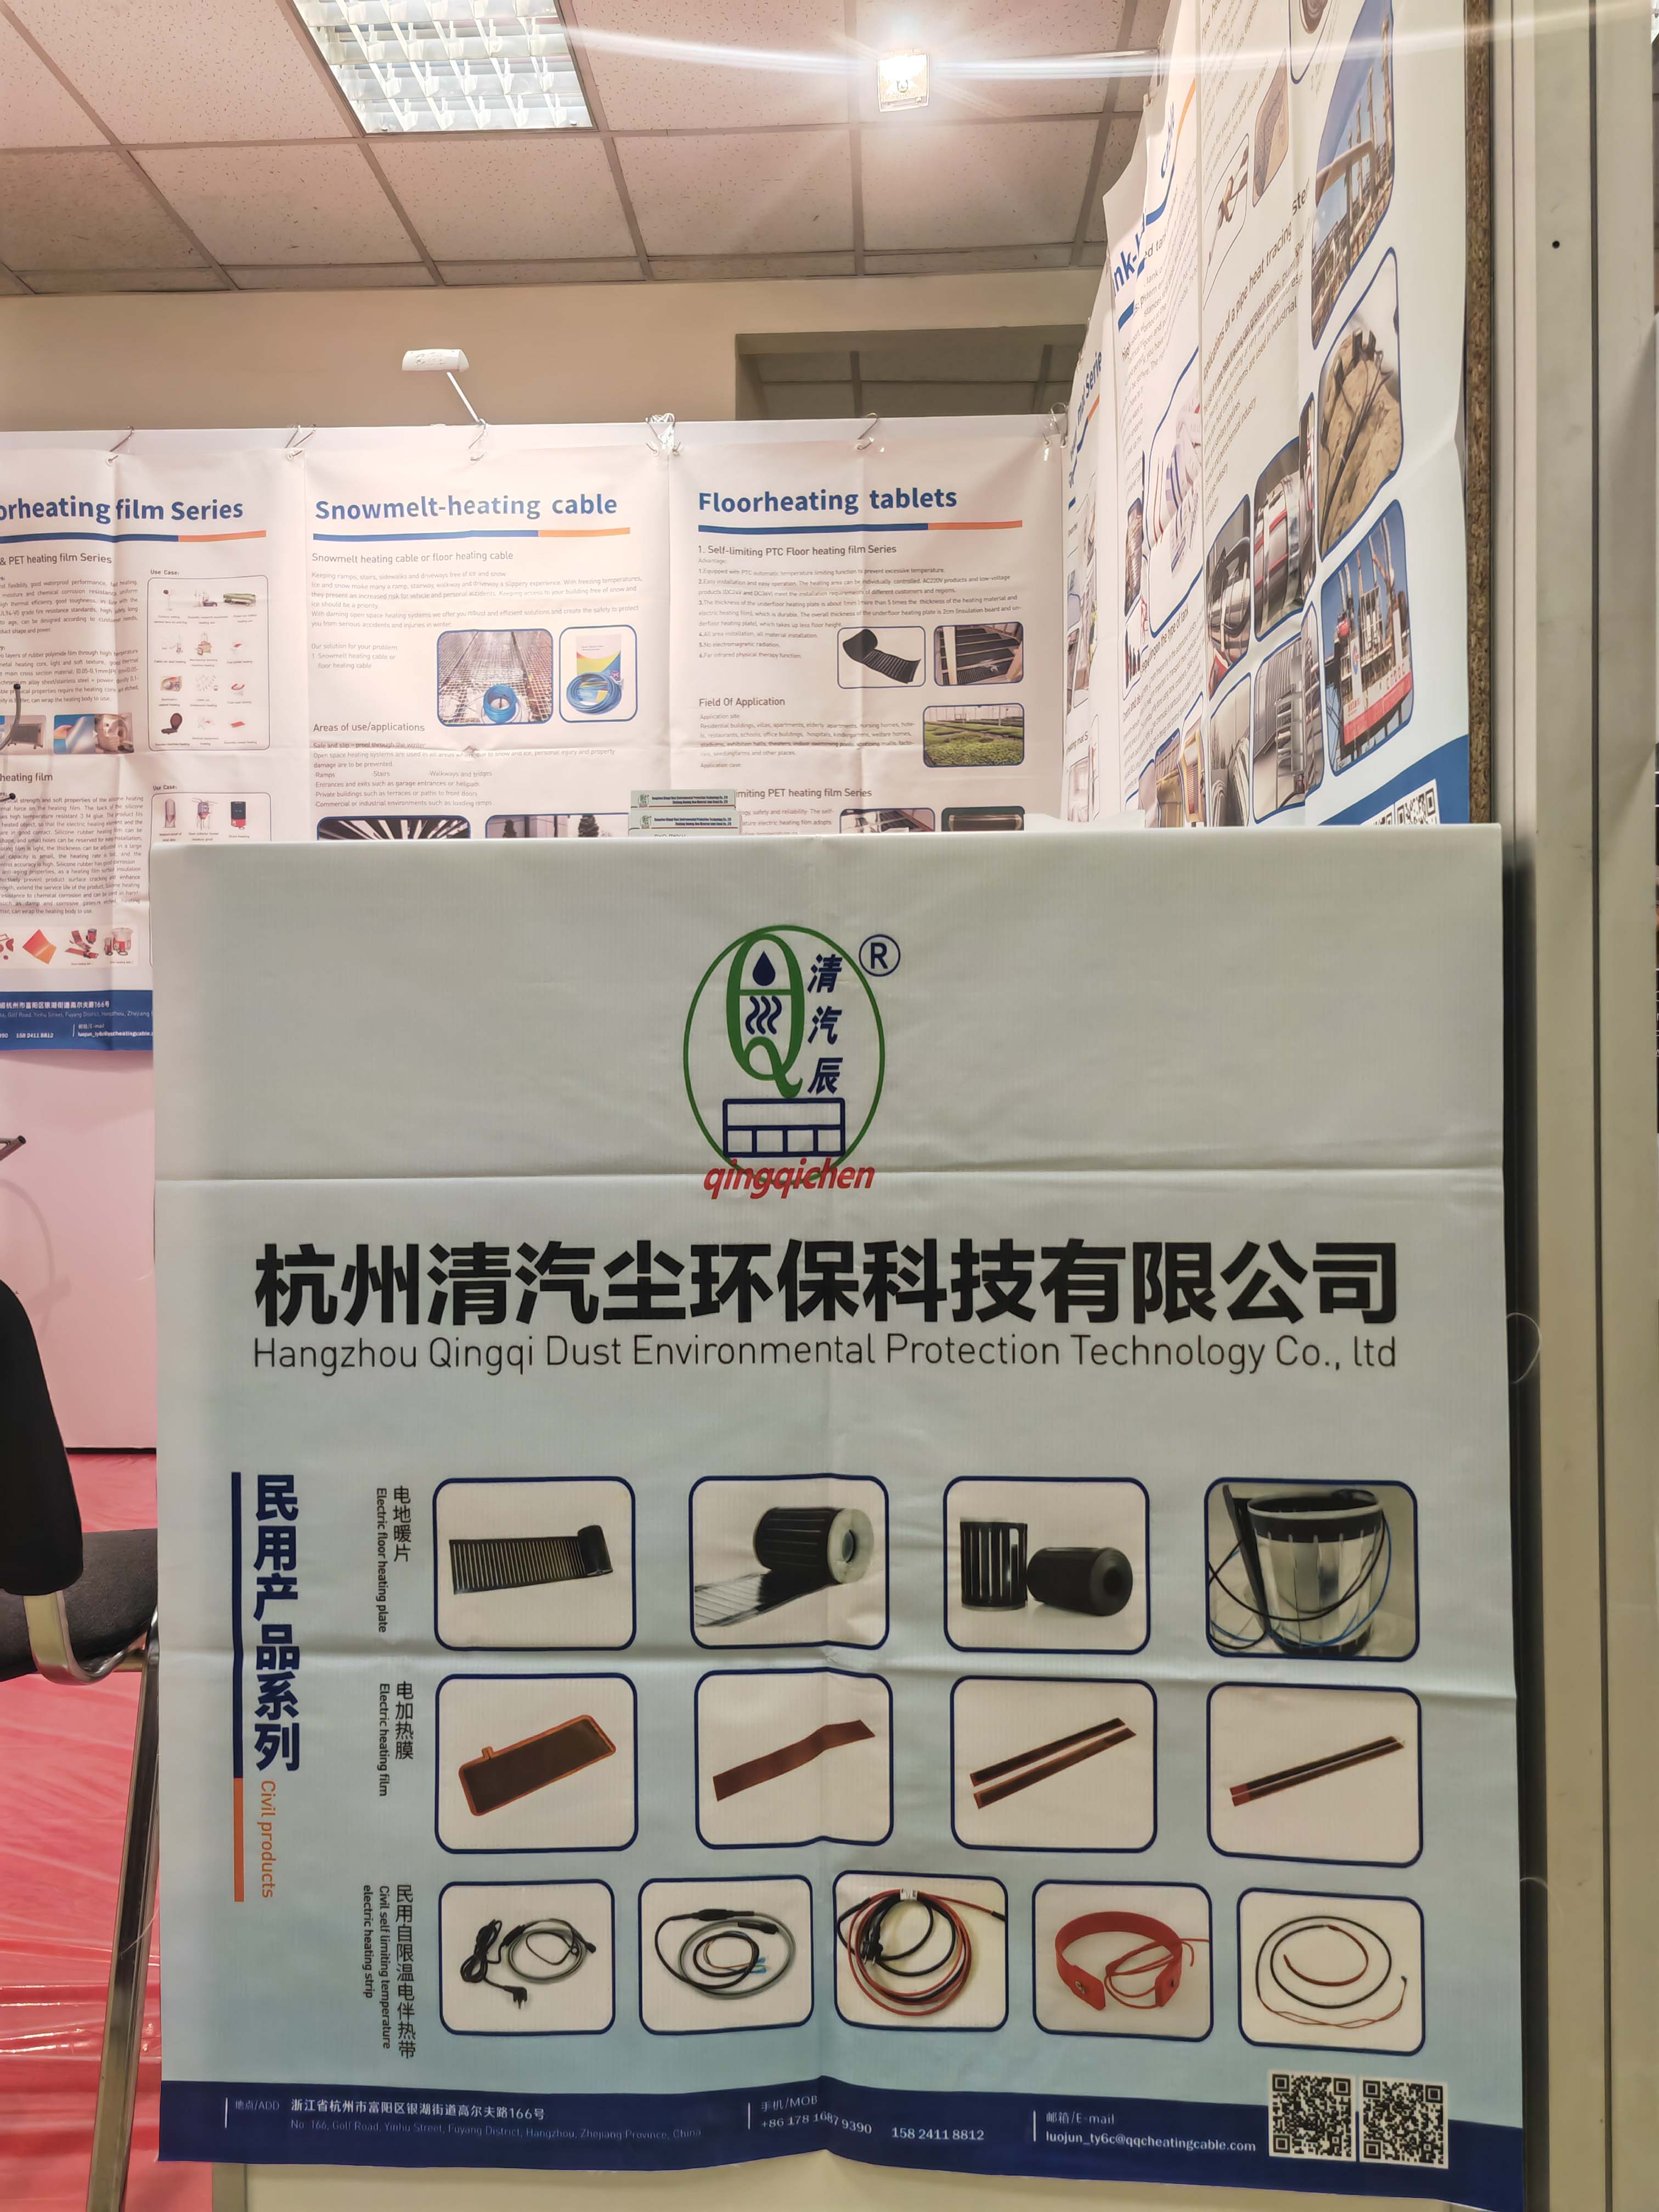  Hangzhou Qingqi Dust Environmental Protection Technology Co., Ltd. do 19 ao 21 de marzo da exposición CabeX en Moscova, Rusia, recibe aos amigos rusos á exposición para intercambiar e negociar orientacións 